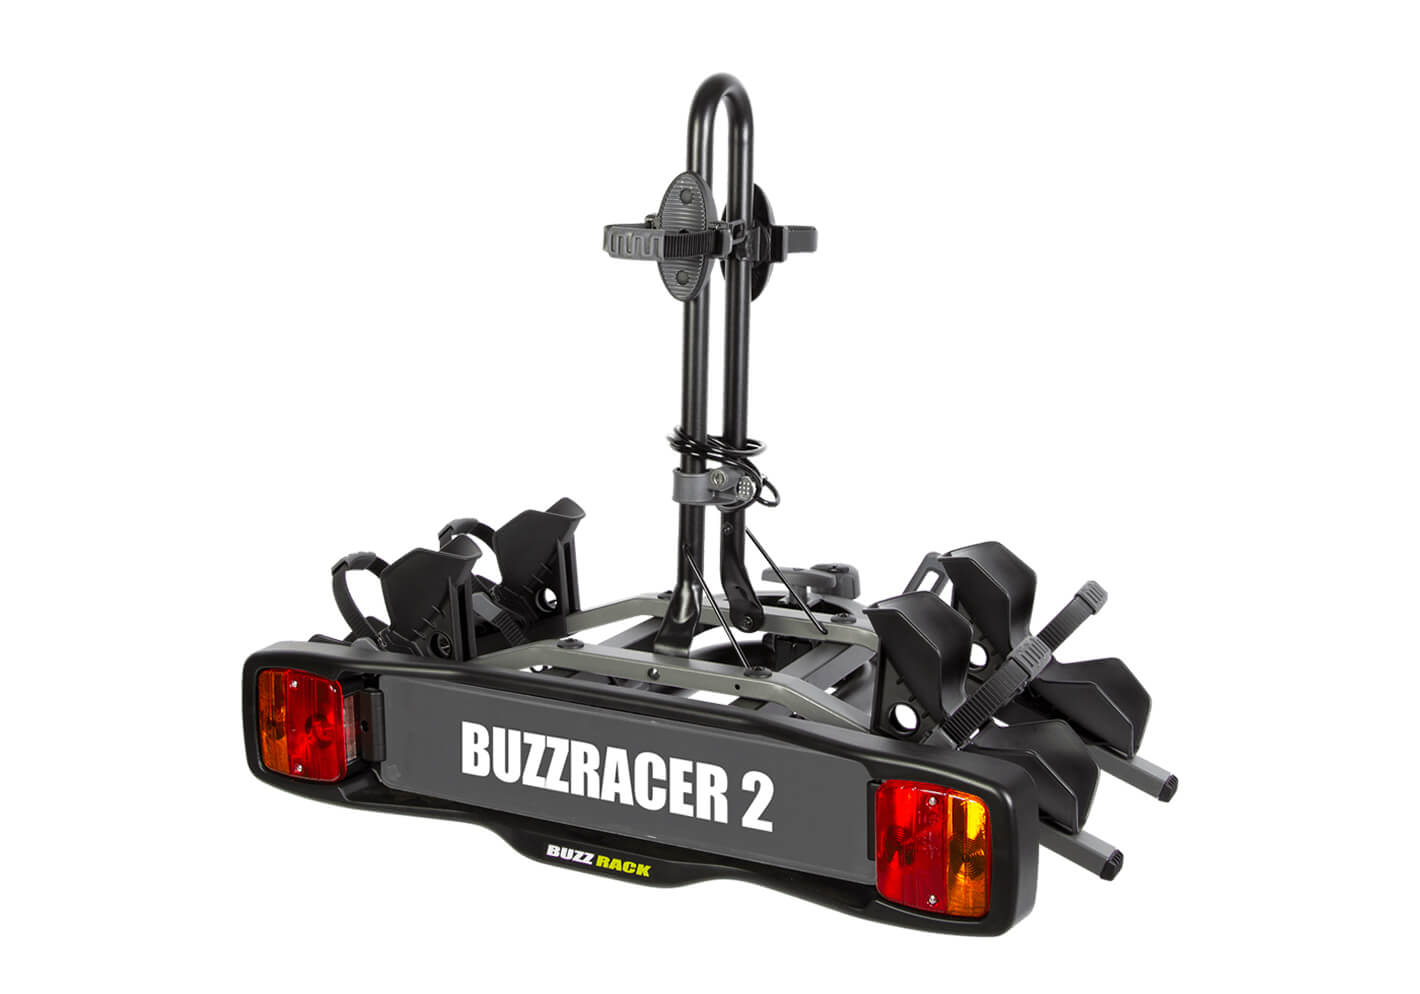 :BUZZ RACK BuzzRacer 2 bike wheel support rack no. BRP332